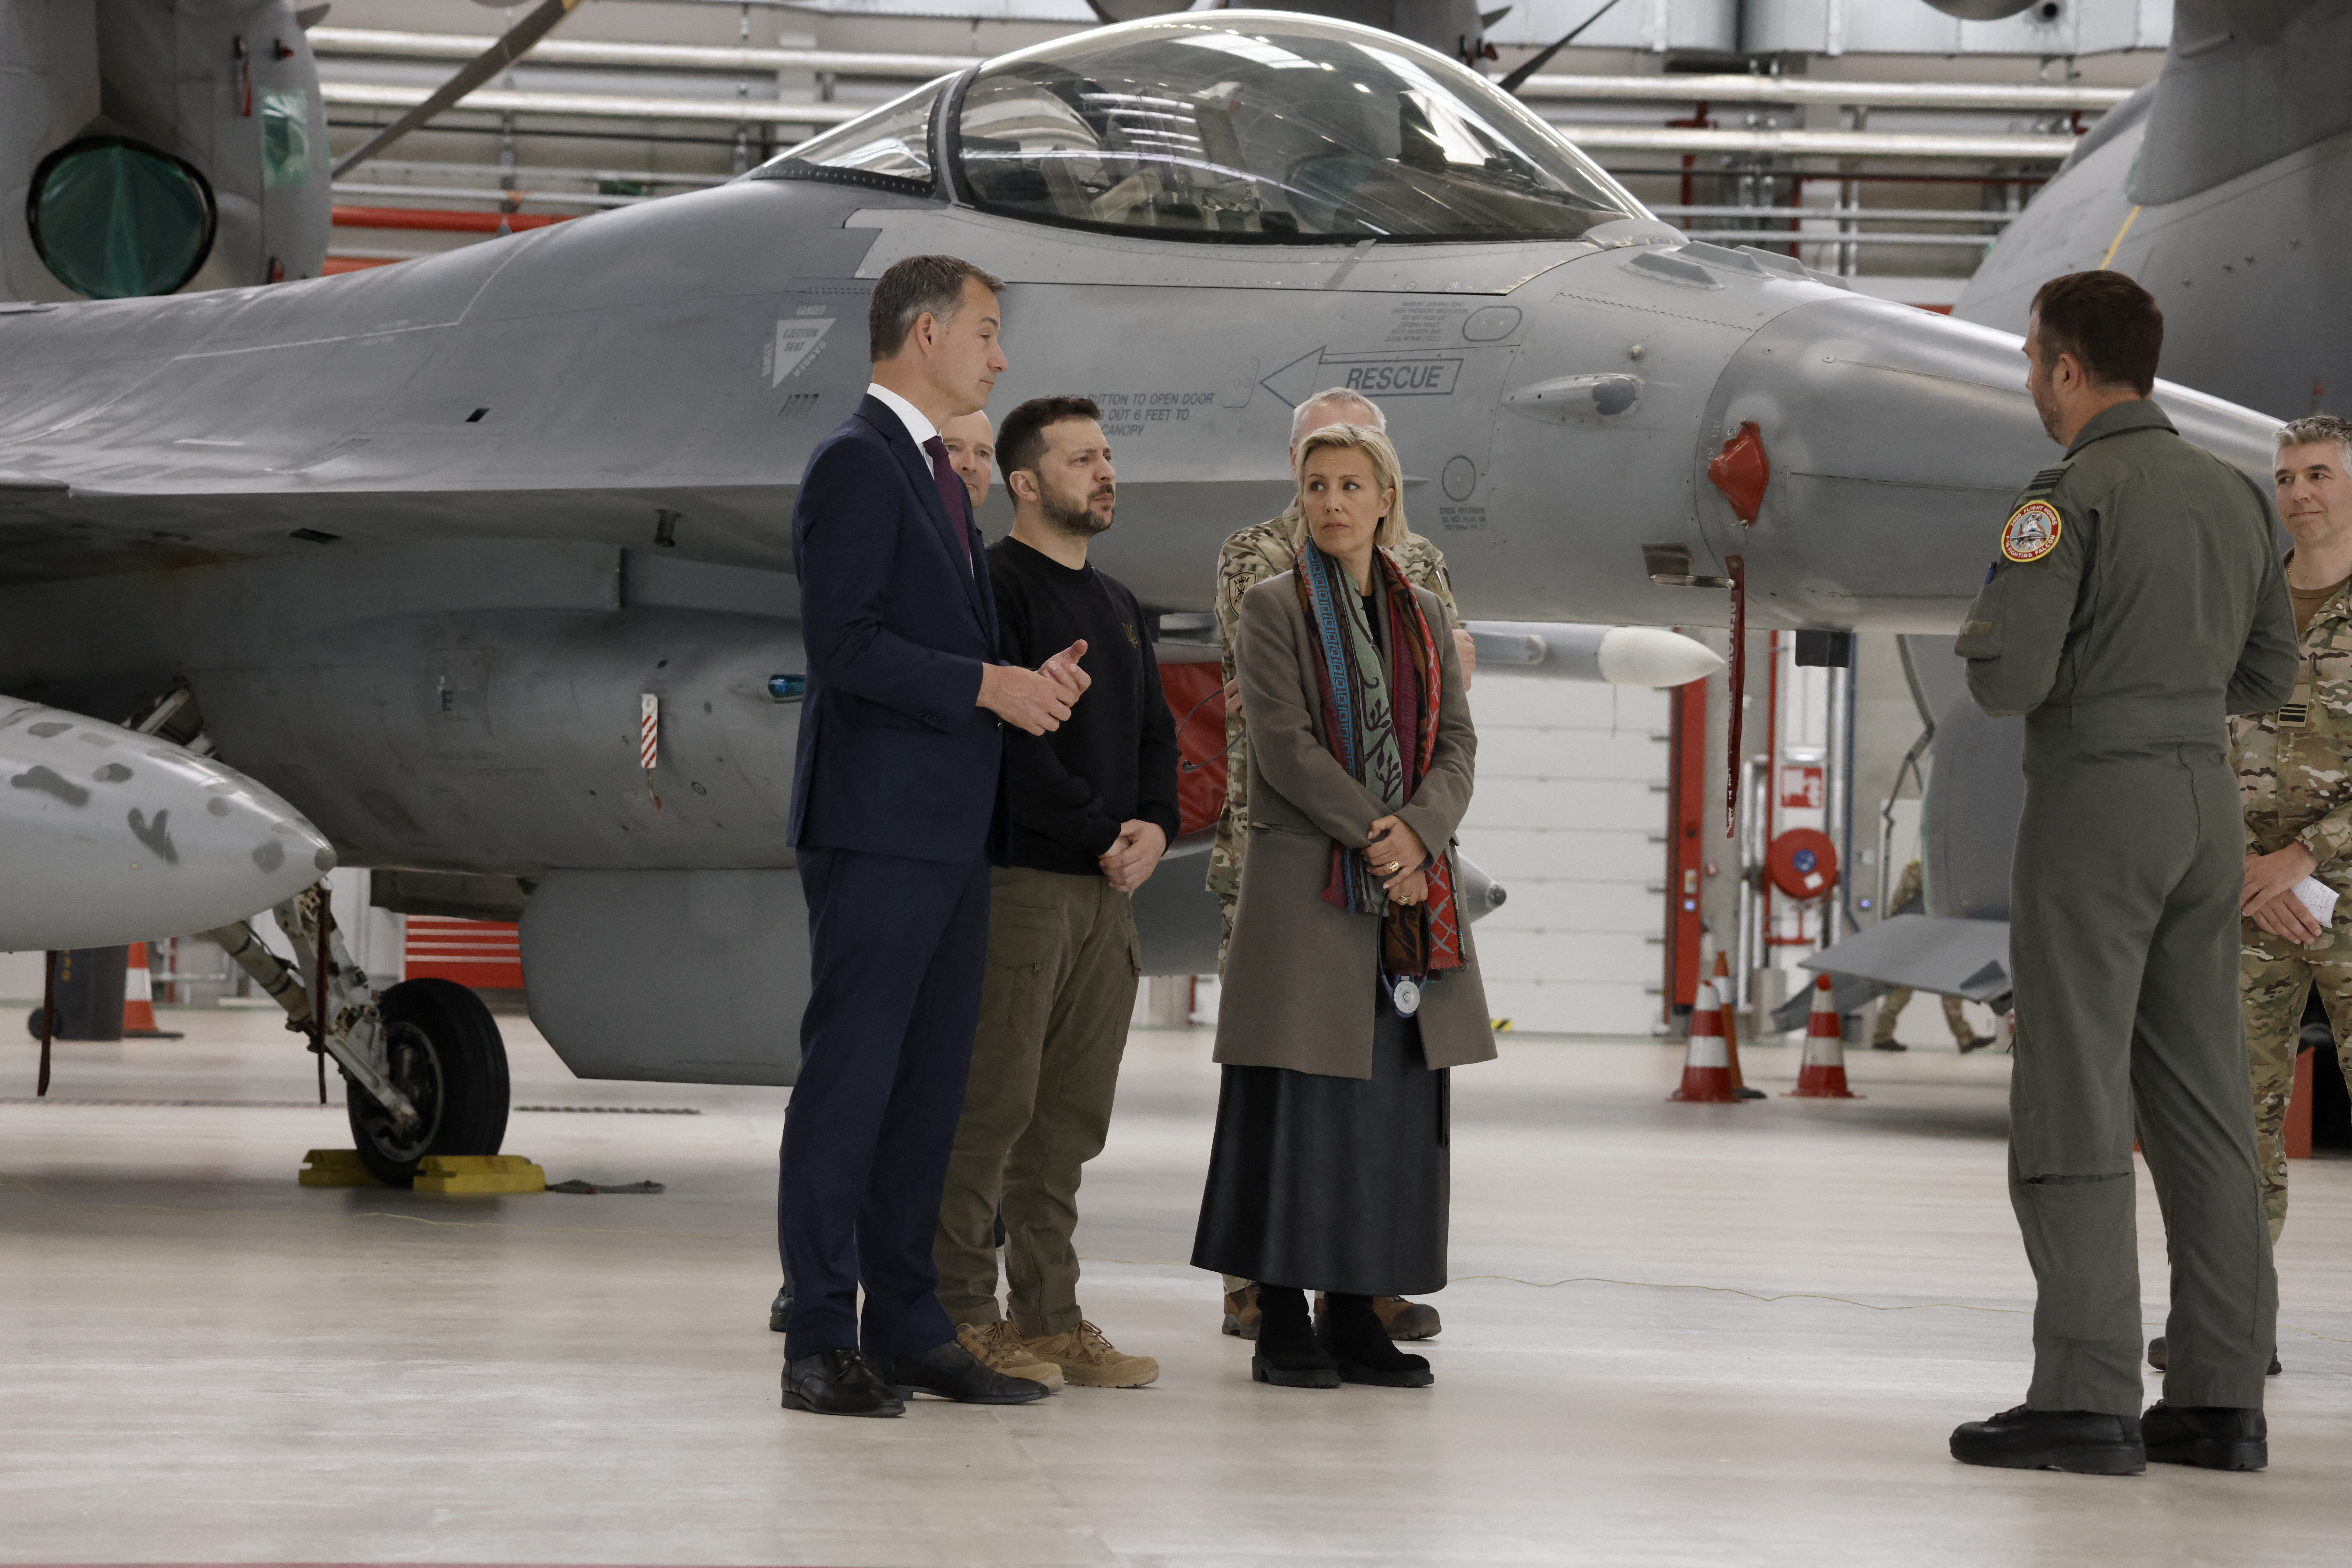 La Belgique s'est engagée à livrer 30 avions de combat F-16 d'ici 2028 pour aider Kiev à lutter contre l'invasion russe. AFP/Simon Wohlfahrt